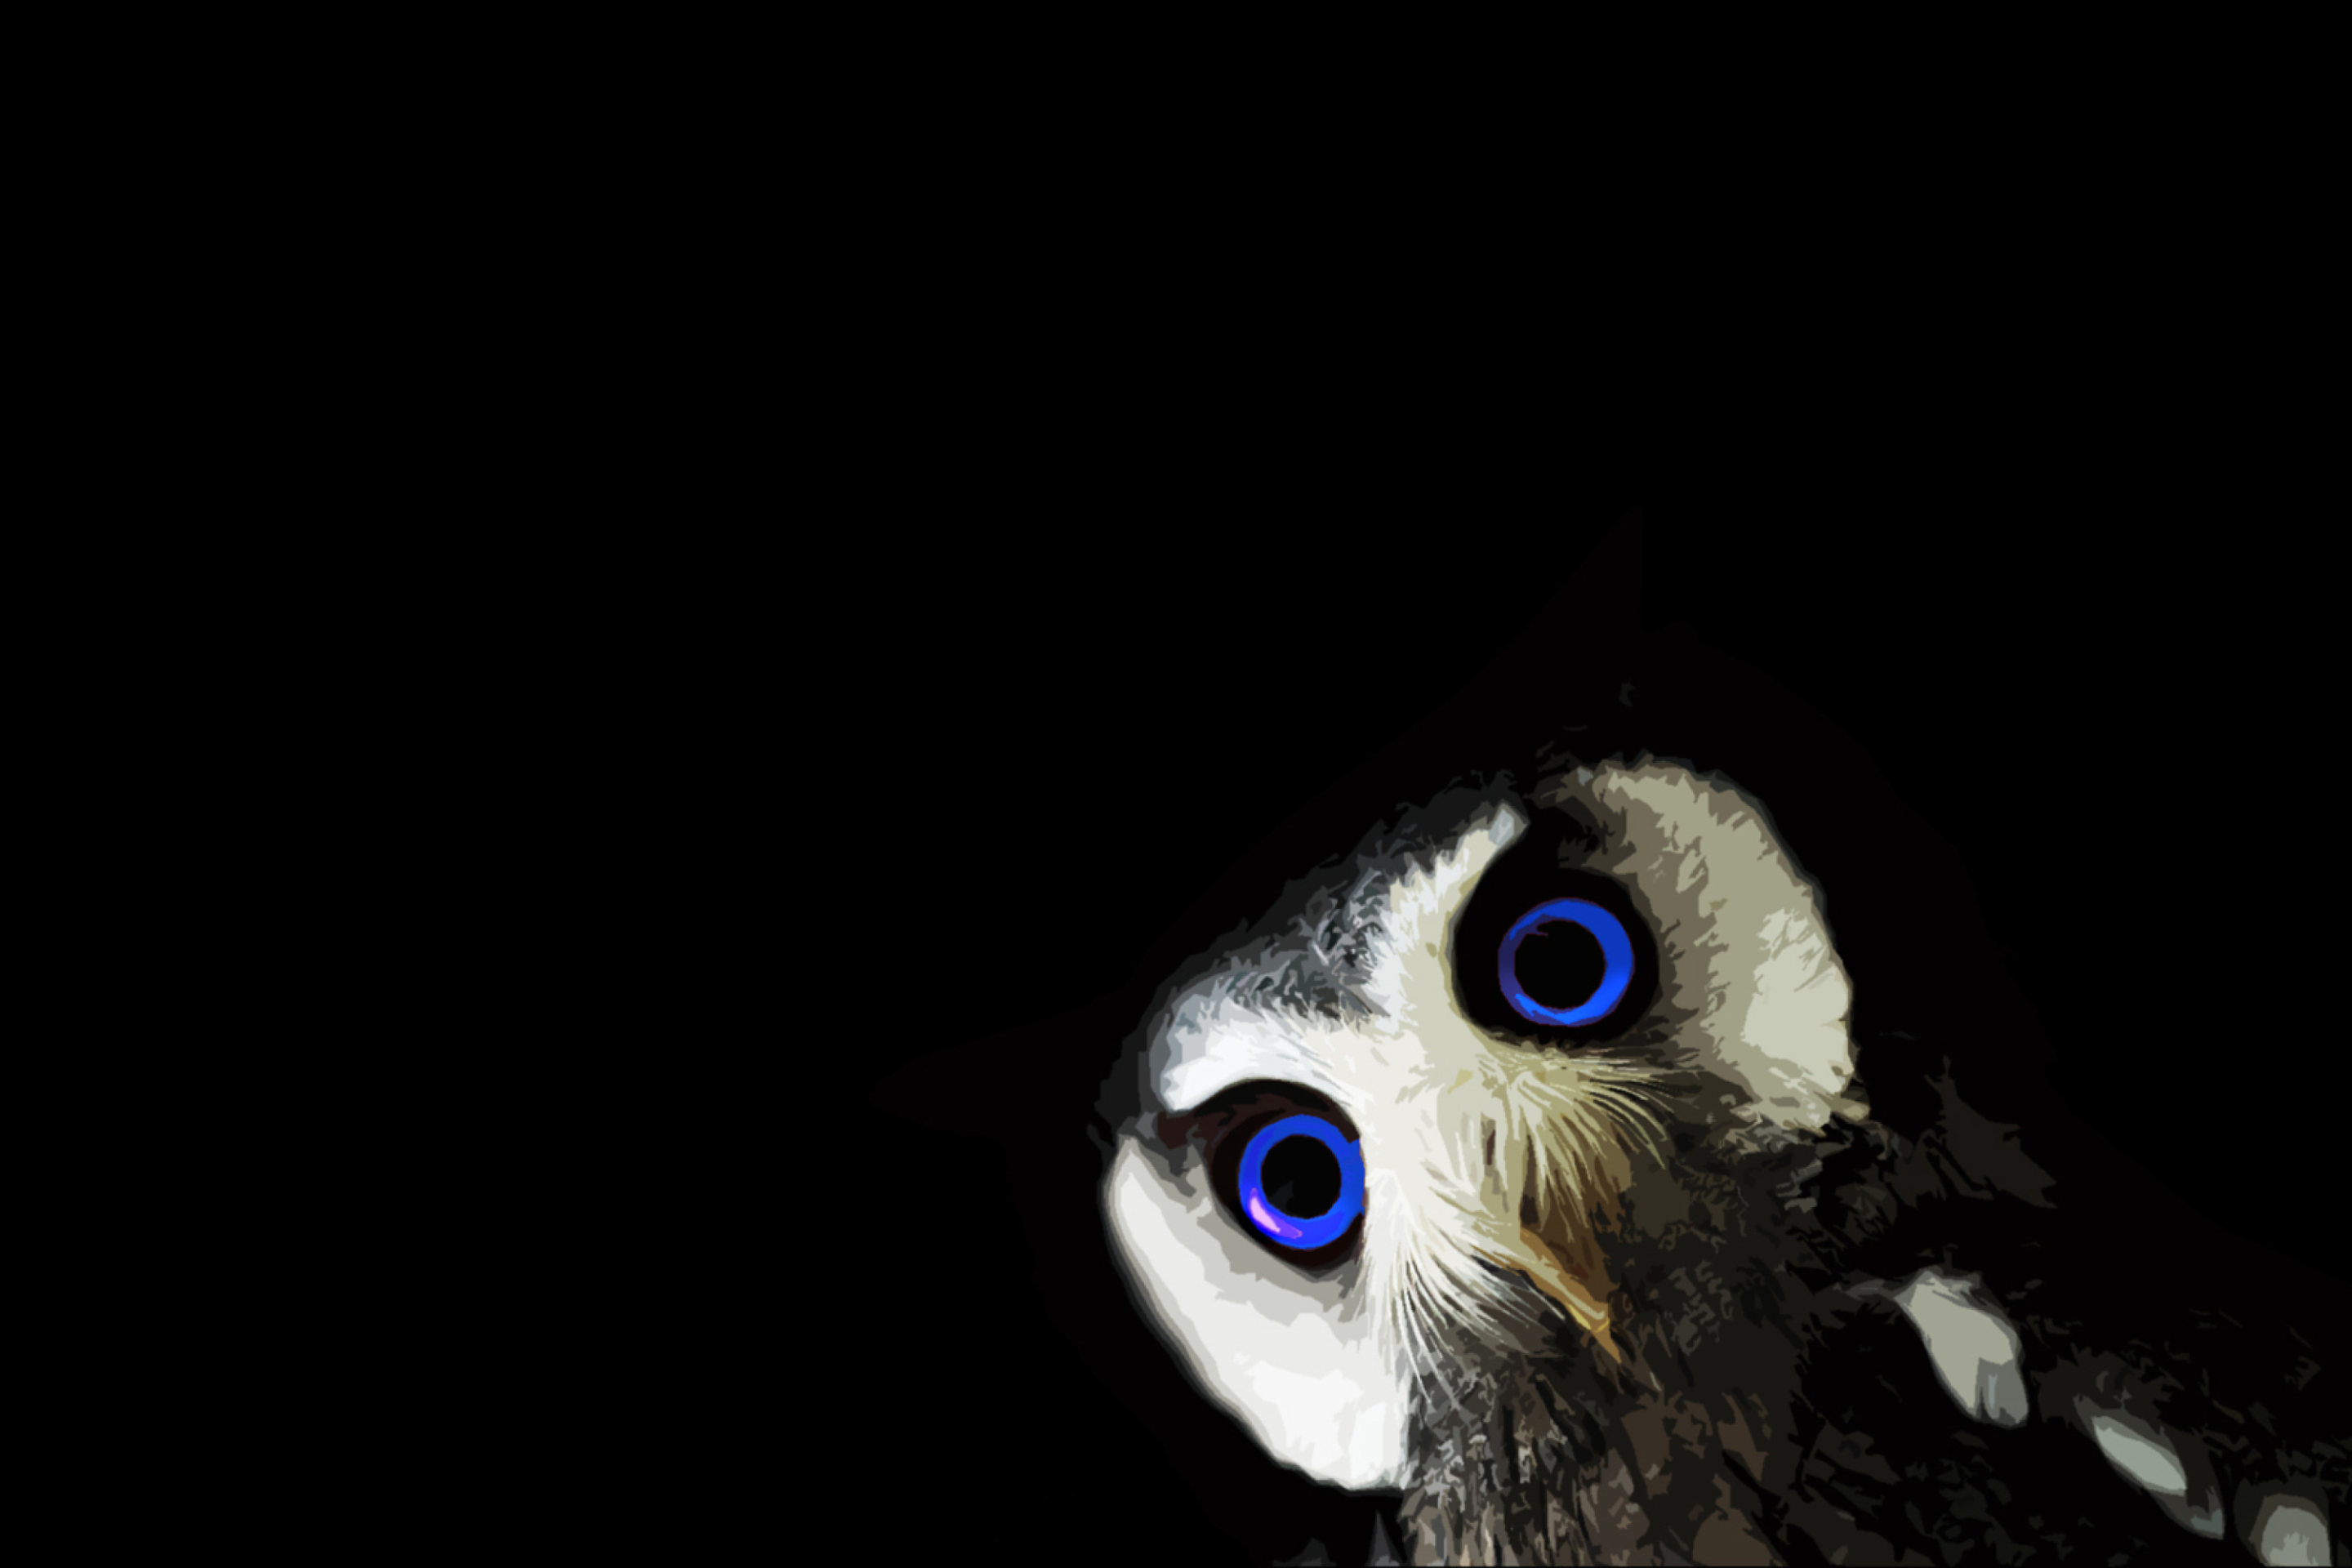 Sfondi Funny Owl With Big Blue Eyes 2880x1920